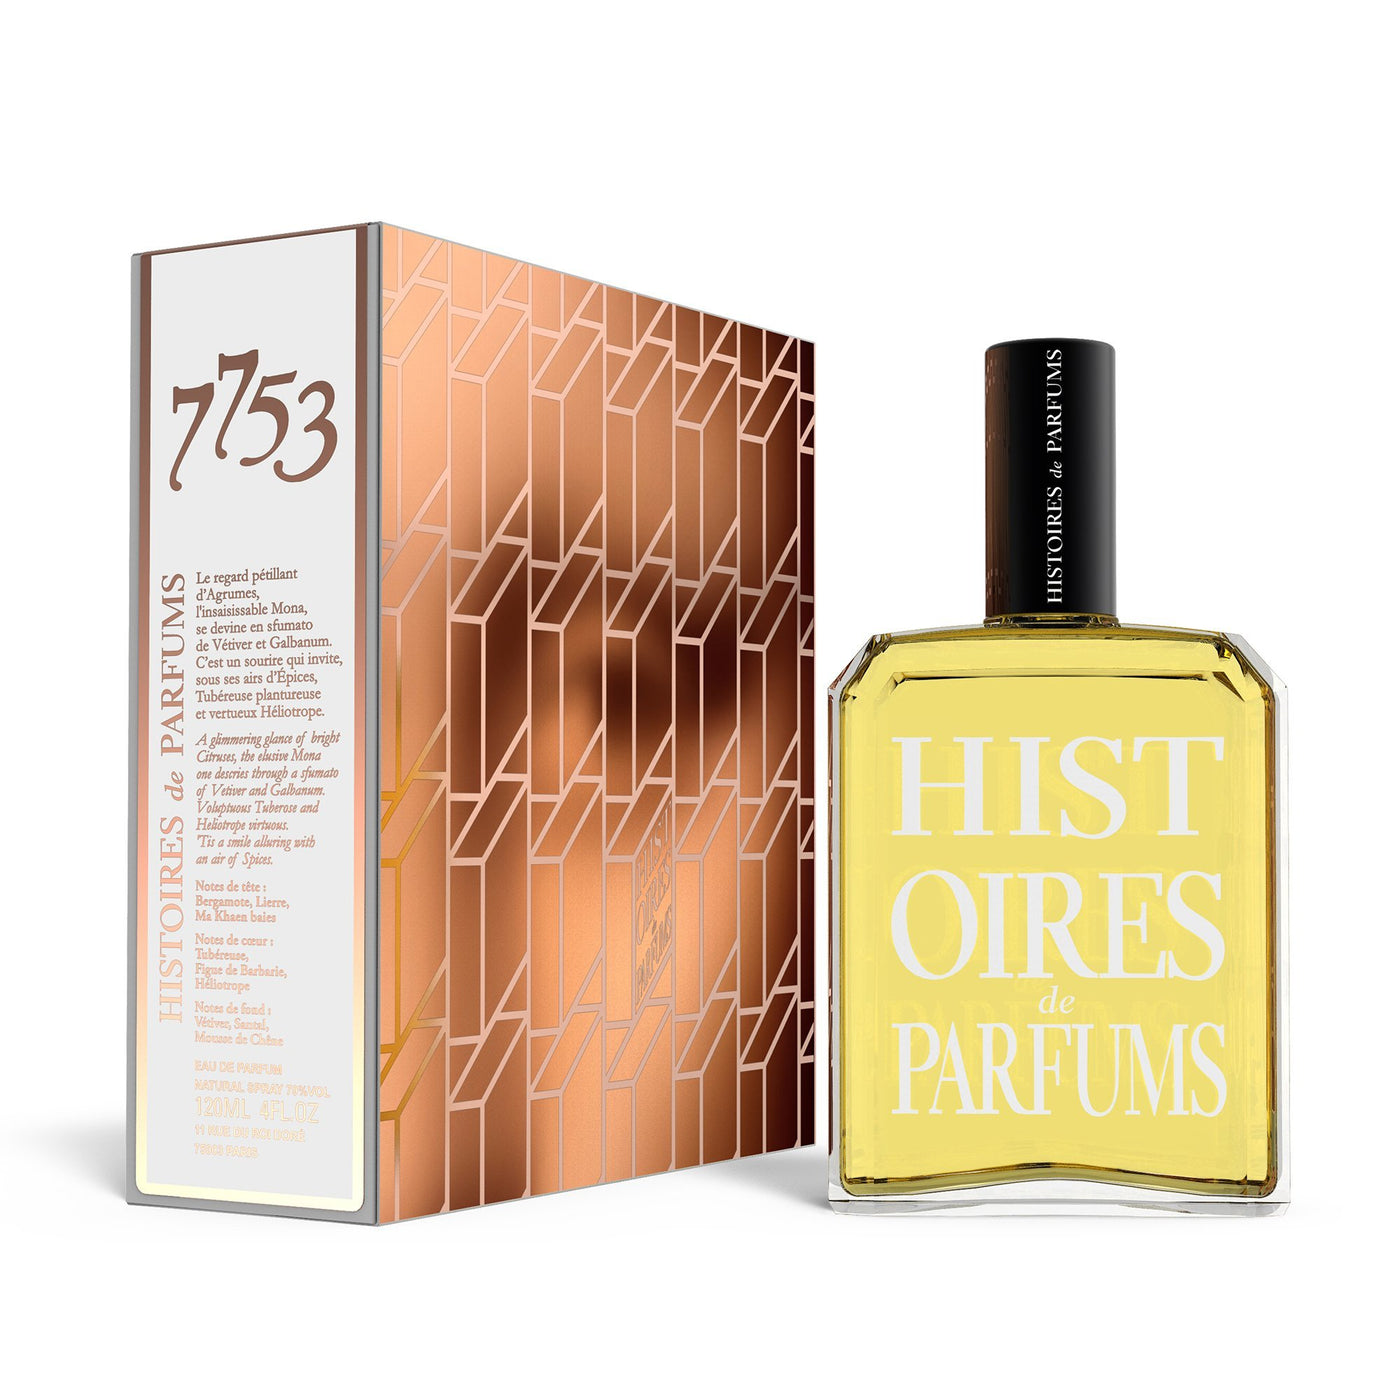 Histoires de Parfums 7753 EDP 120ml